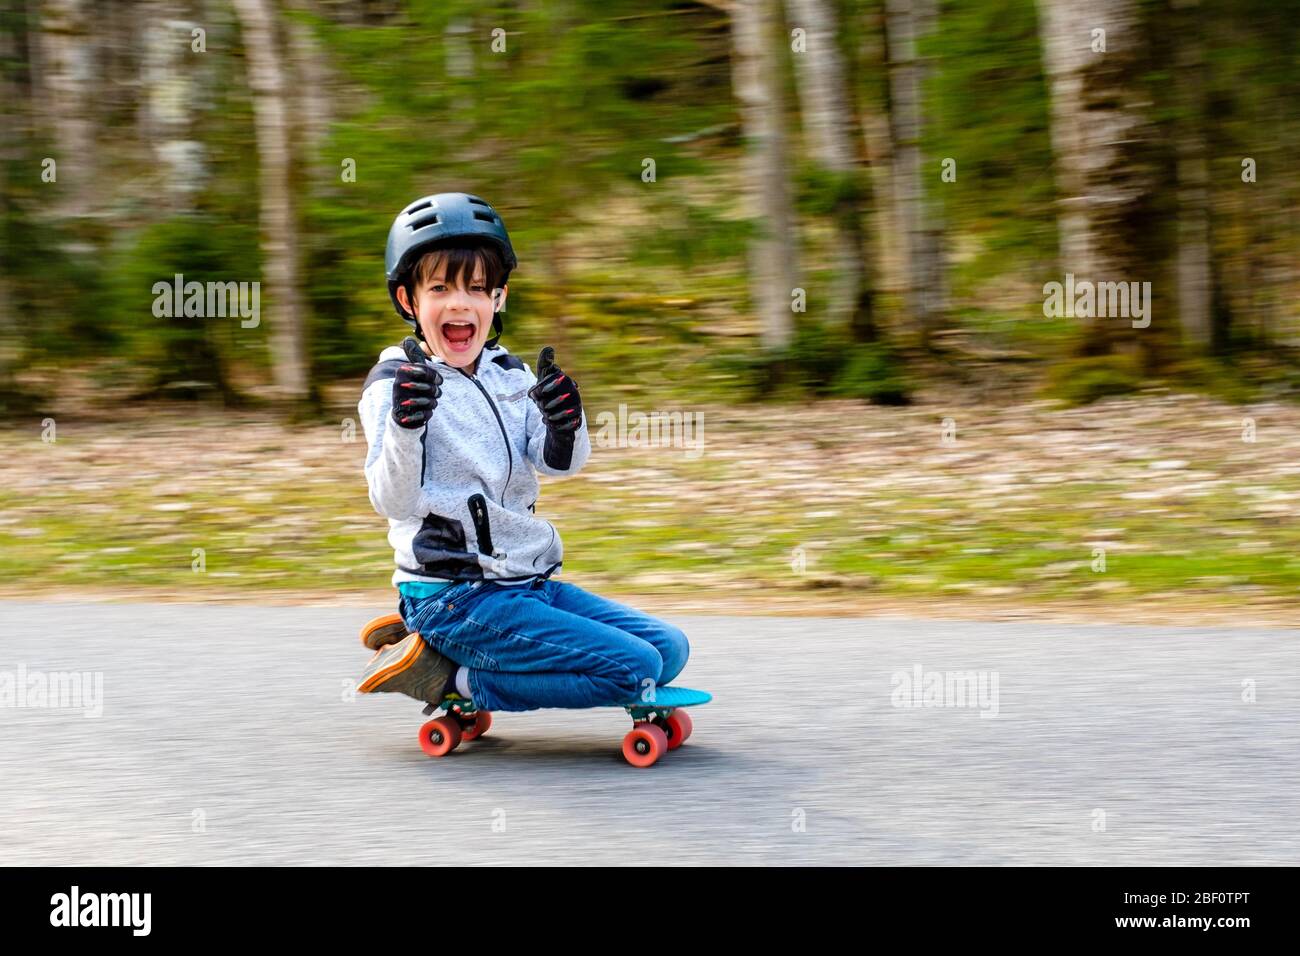 Junge, 9 Jahre alt, kniet auf einem Skateboard und lacht in die Kamera, Follower, Bayern, Deutschland Stockfoto